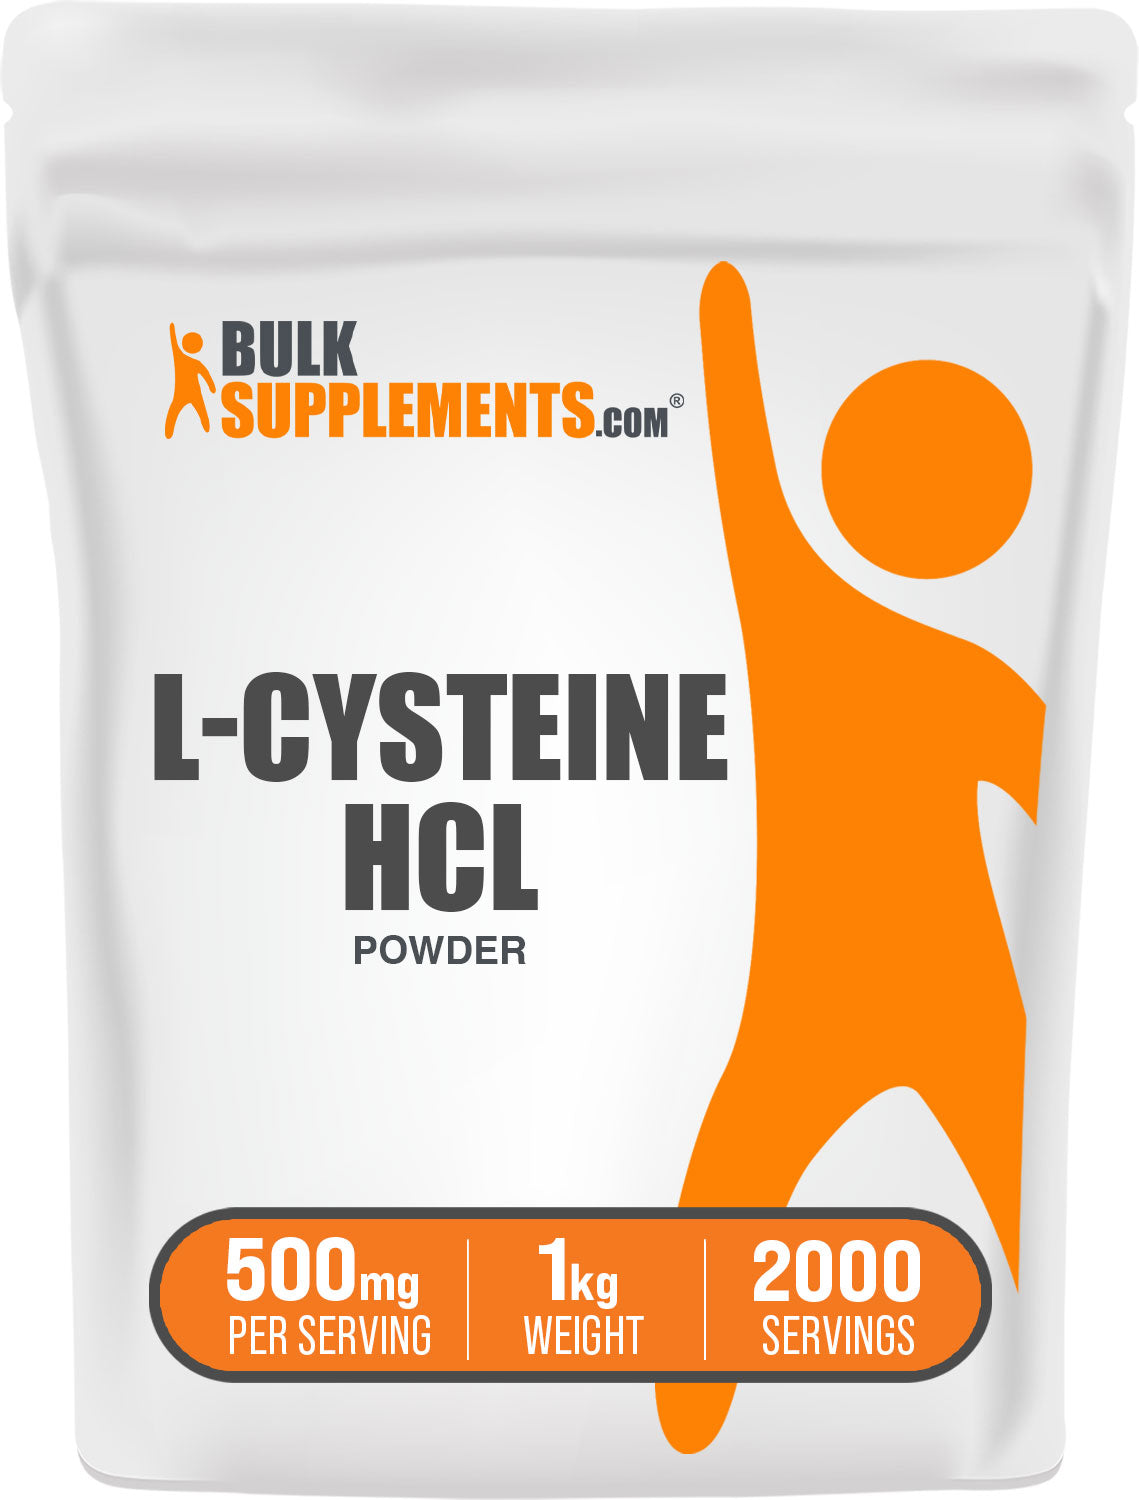 L-Cysteine HCl 1kg